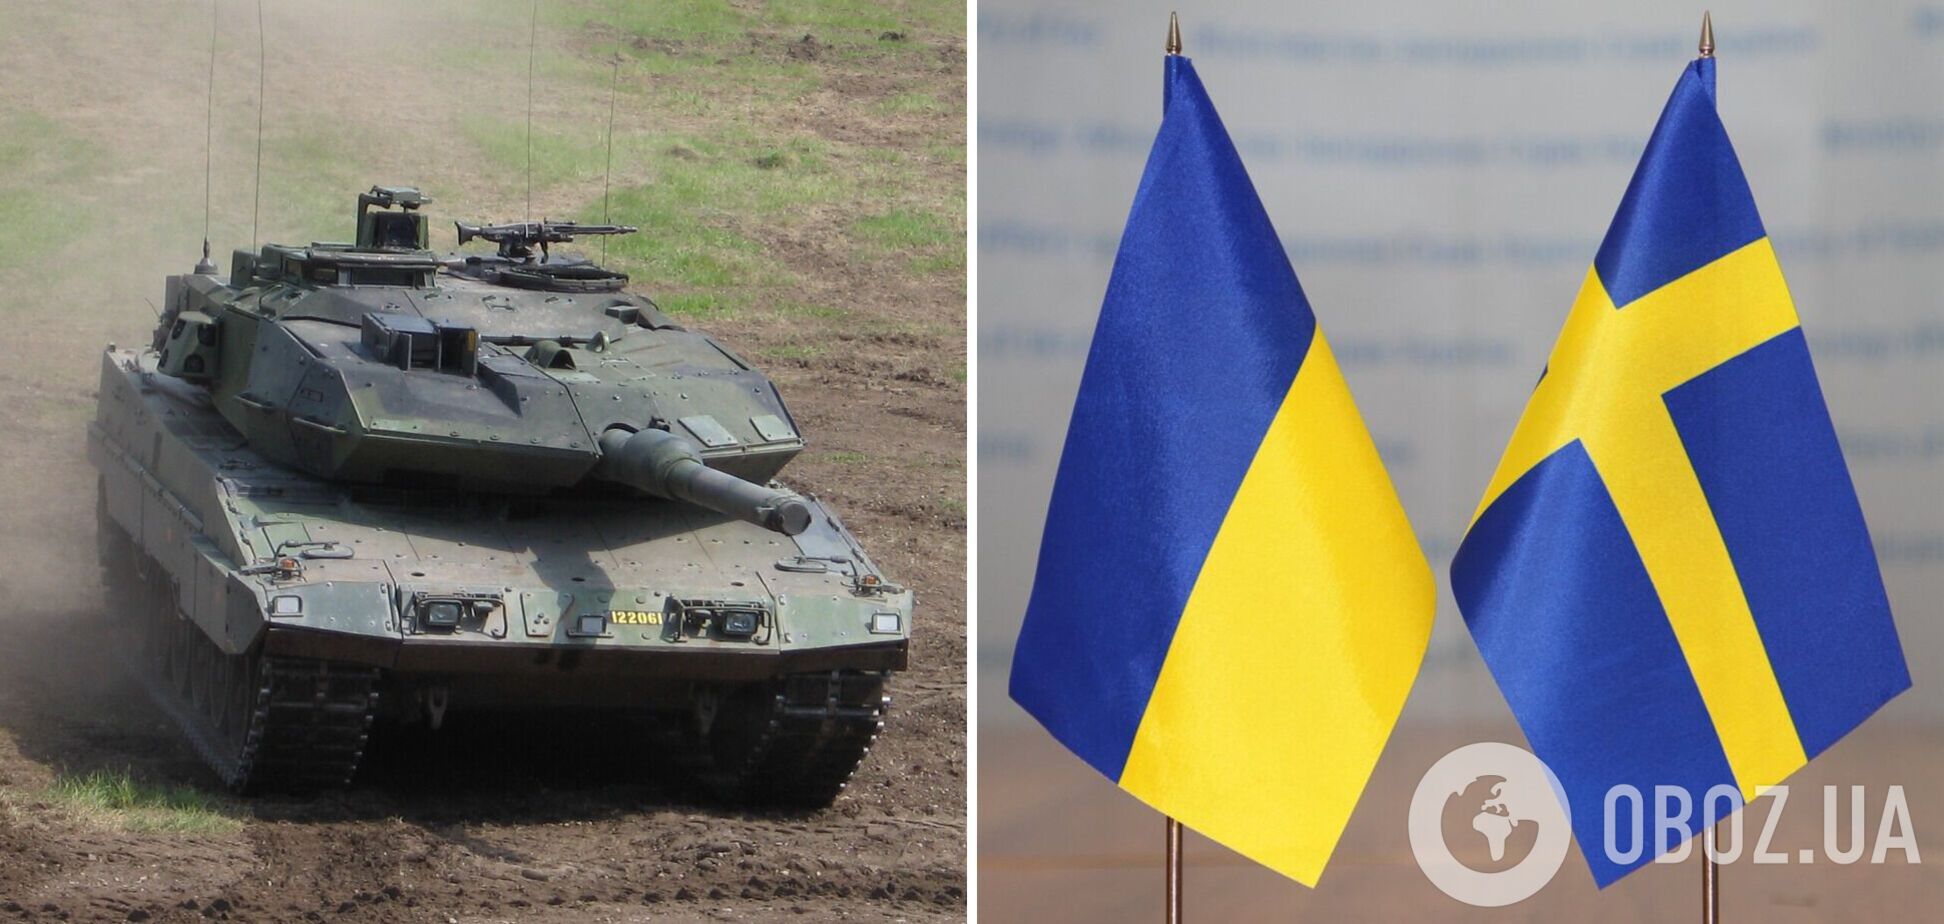 Швеція розглядає питання про передачу Україні танків Stridsvagn 122, – міністр оборони